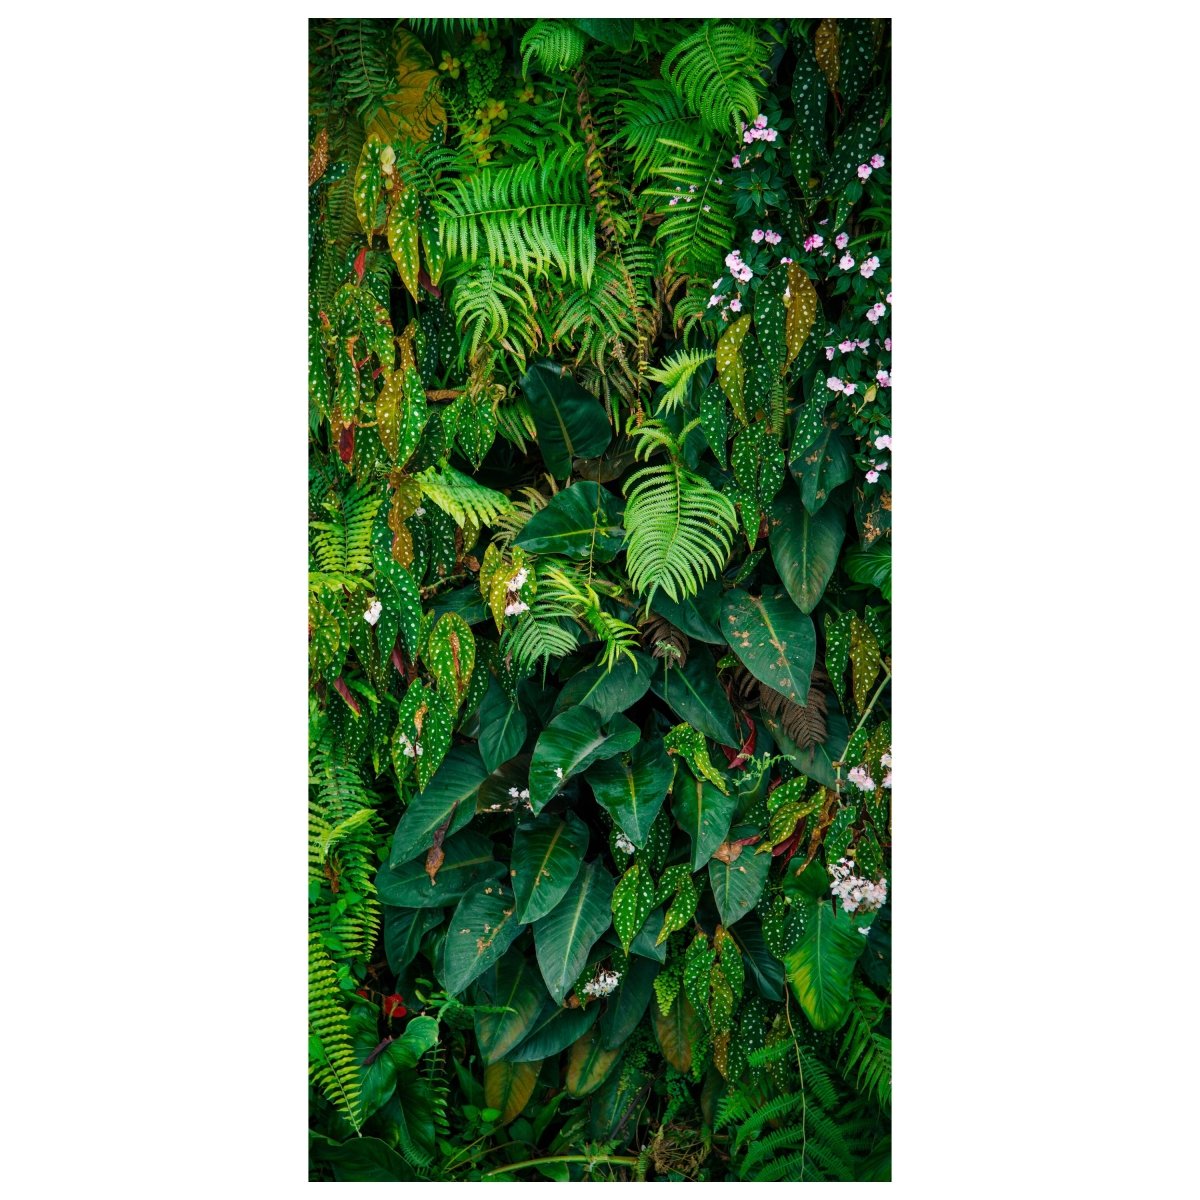 Türtapete Wand aus Blättern, Urwald, Natur, Grün M1352 - Bild 2